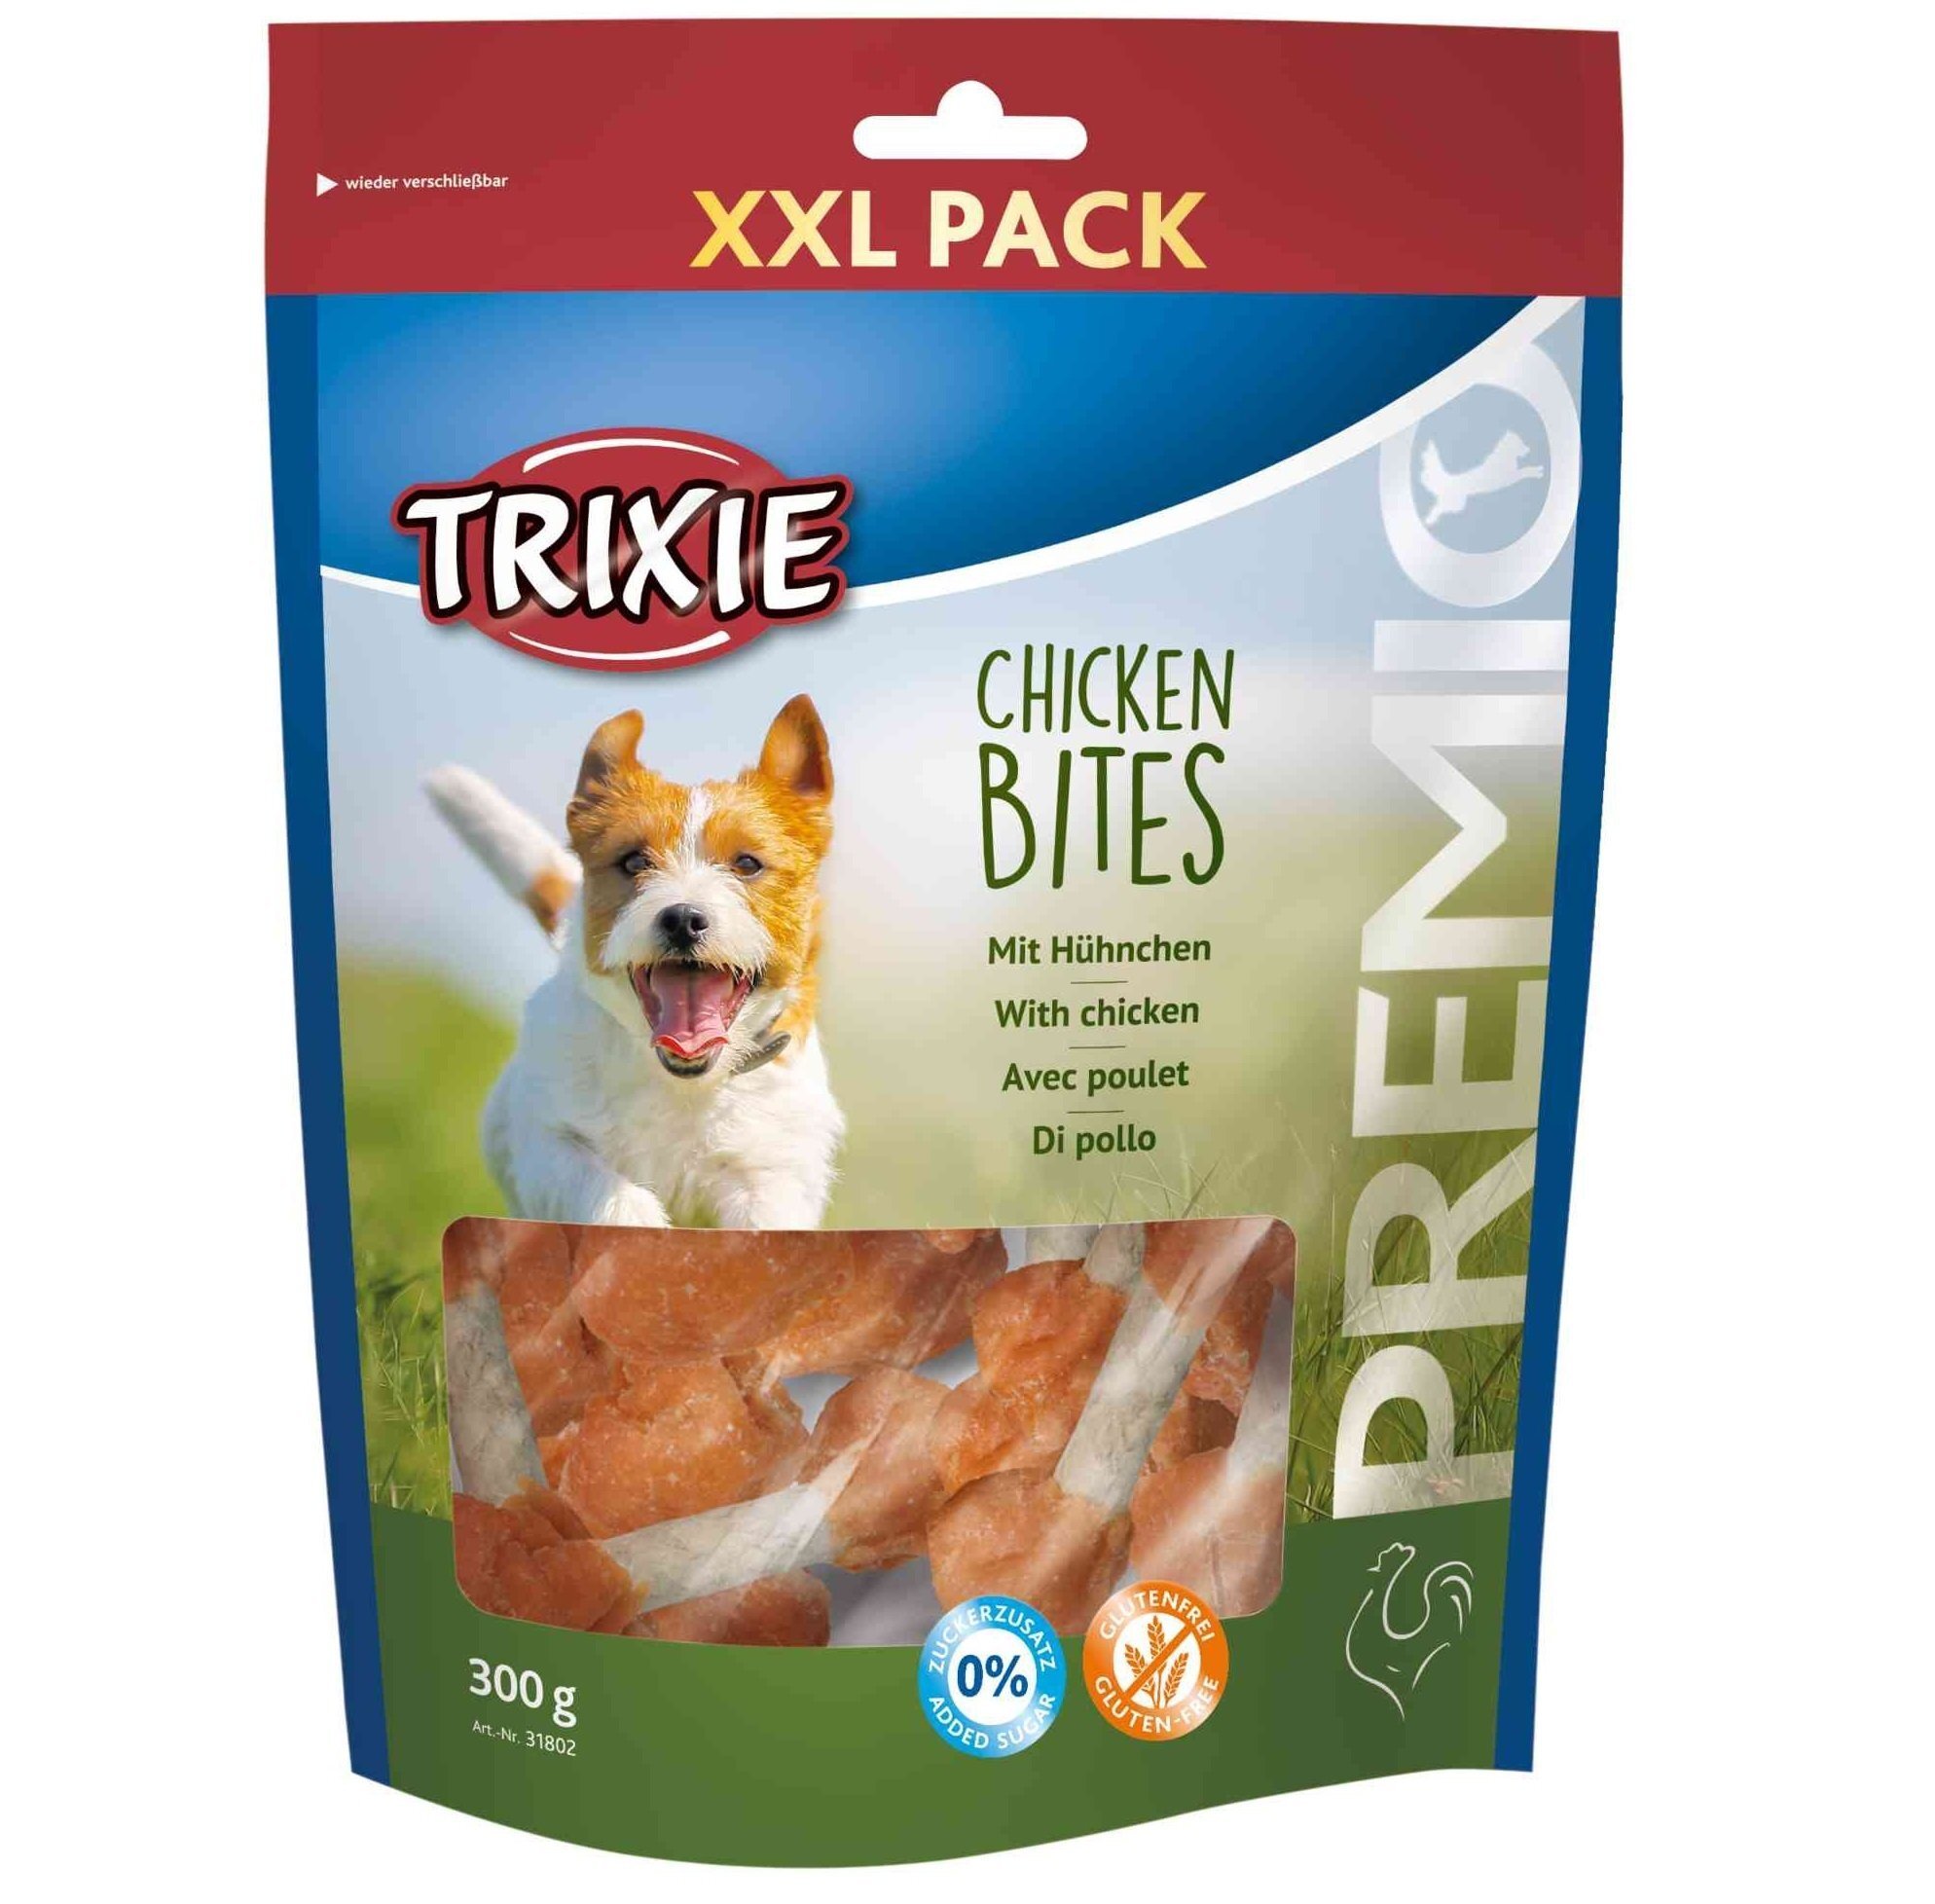 Ласощі для собак Trixie PREMIO Chicken Bites XXL Pack кур. гантелі 300грфото1